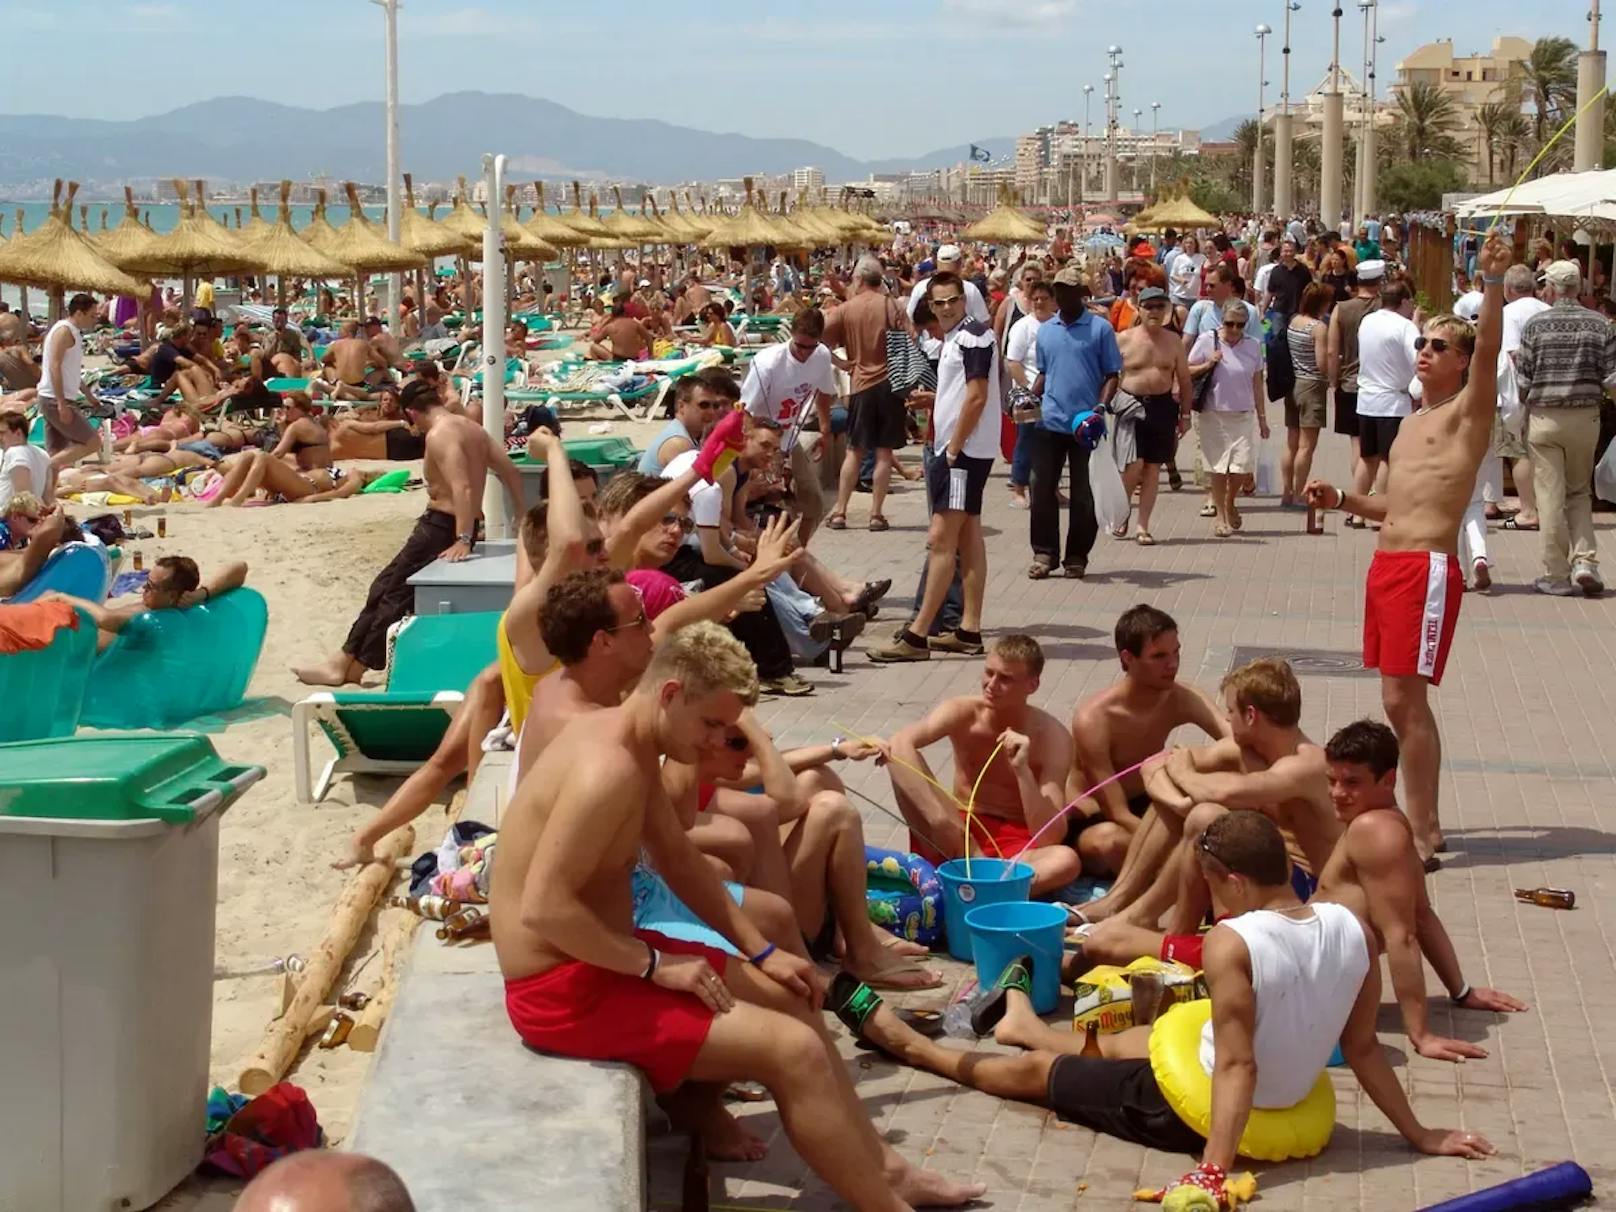 Party, Saufen und Feiern lautet das Motto vieler junger Touristen auf Mallorca.